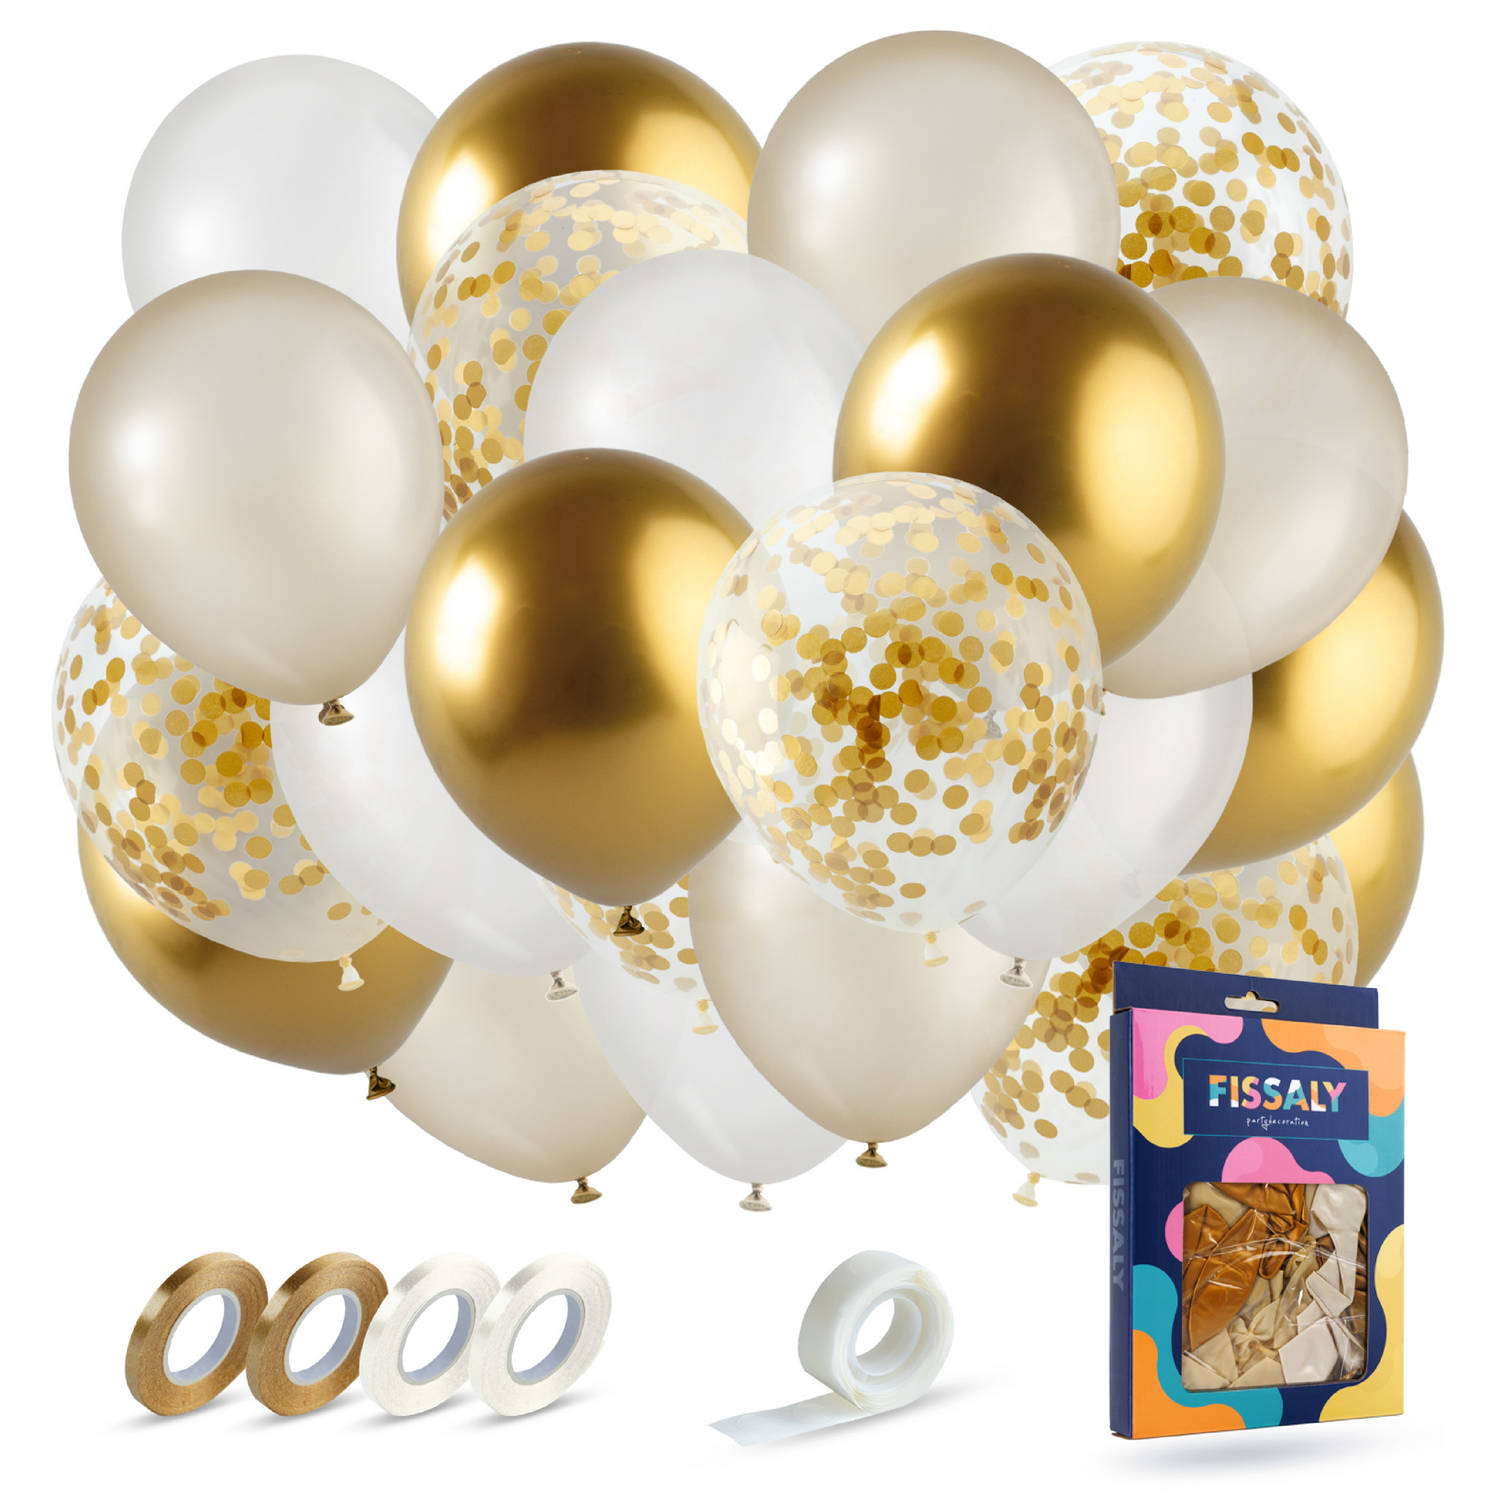 Fissaly® 40 stuks Goud & Wit Helium Ballonnen met Lint - Verjaardag Versiering Decoratie - Papieren Confetti - Latex